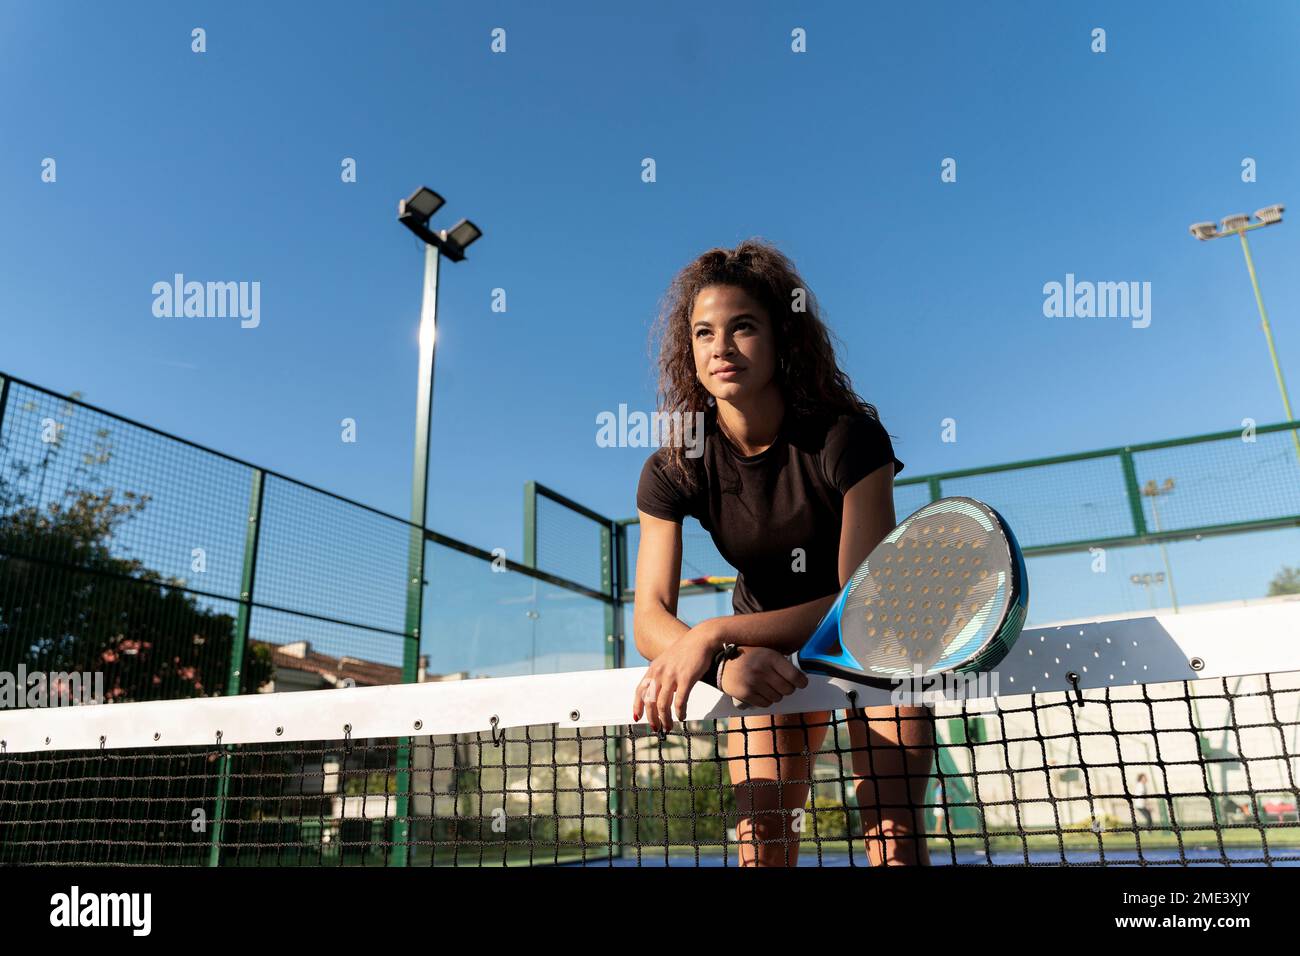 Jeune femme avec raquette penchée sur le filet de tennis au court Banque D'Images